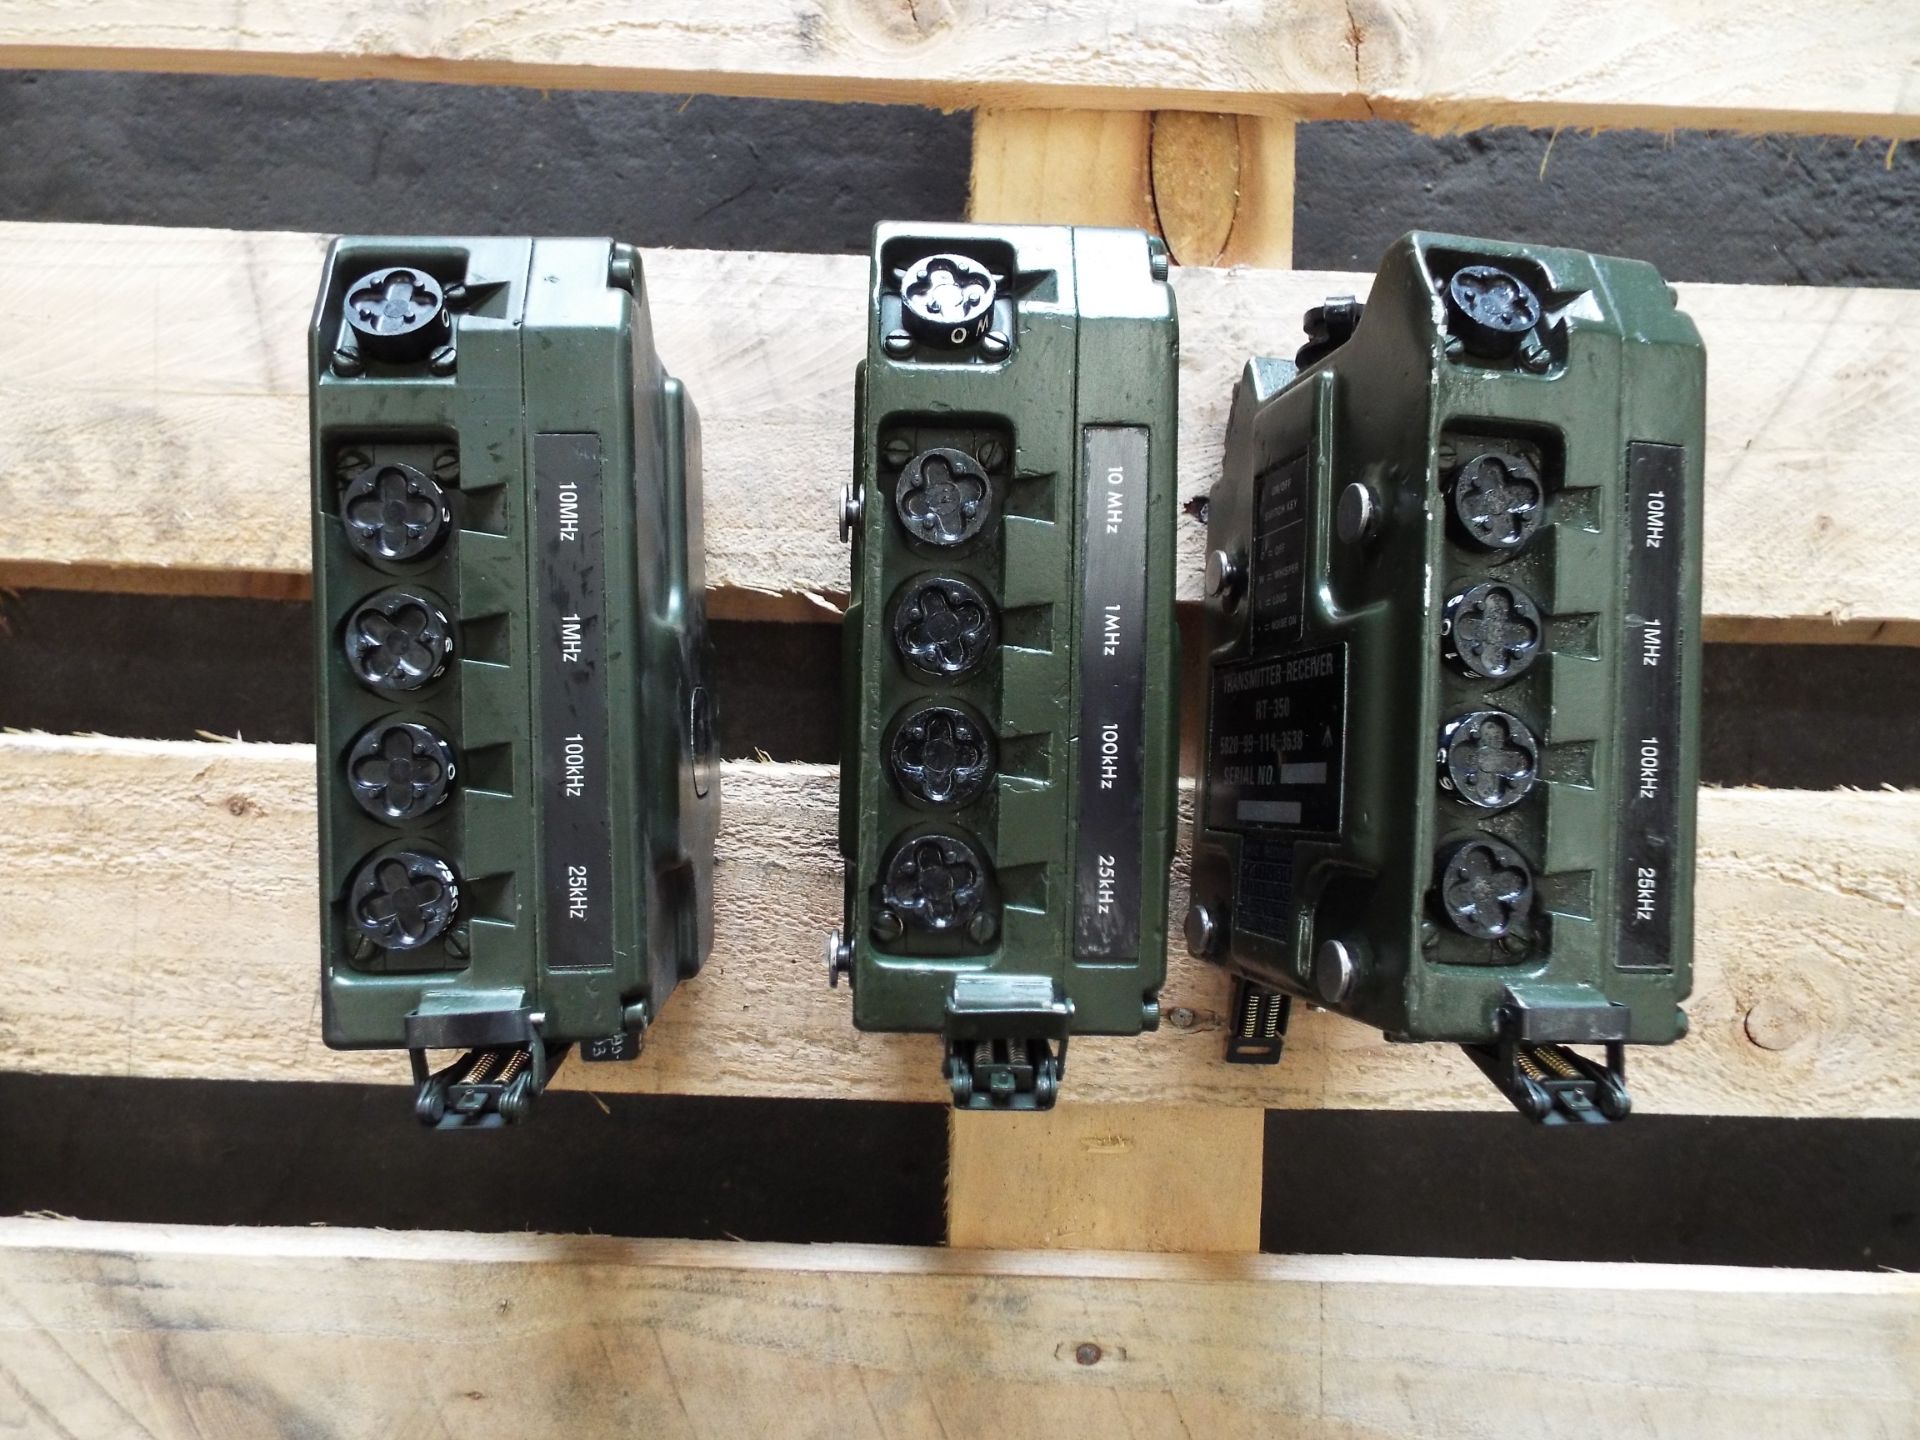 3 x Clansman RT- 350 Transmitter Receivers - Image 3 of 4